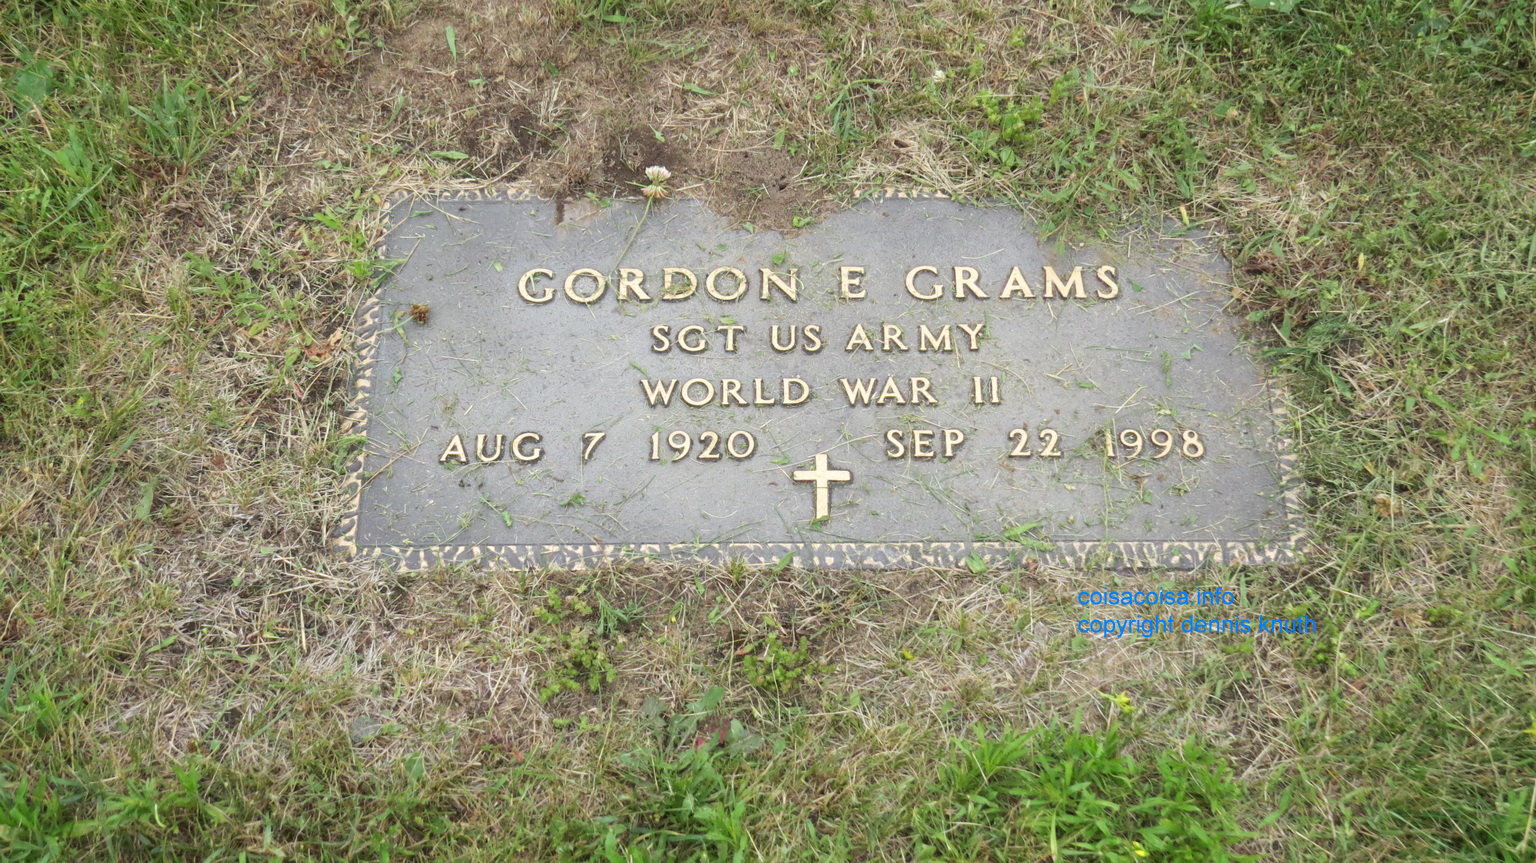 Gravestone for Gordon Grams of Augusta Wisonsin